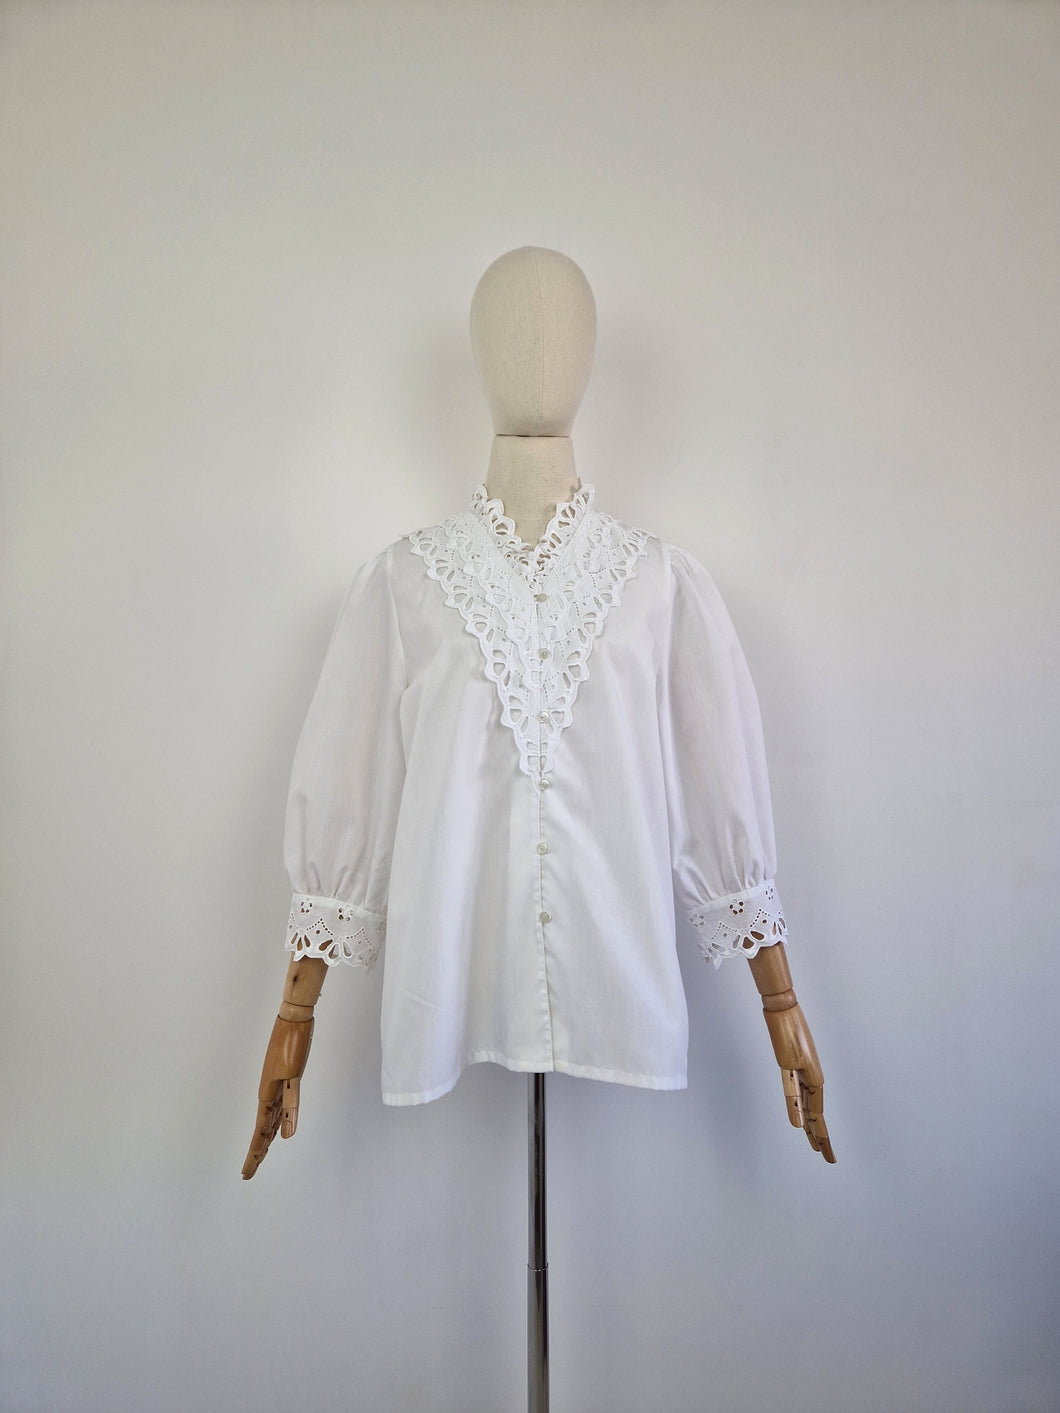 Vintage white lace blouse